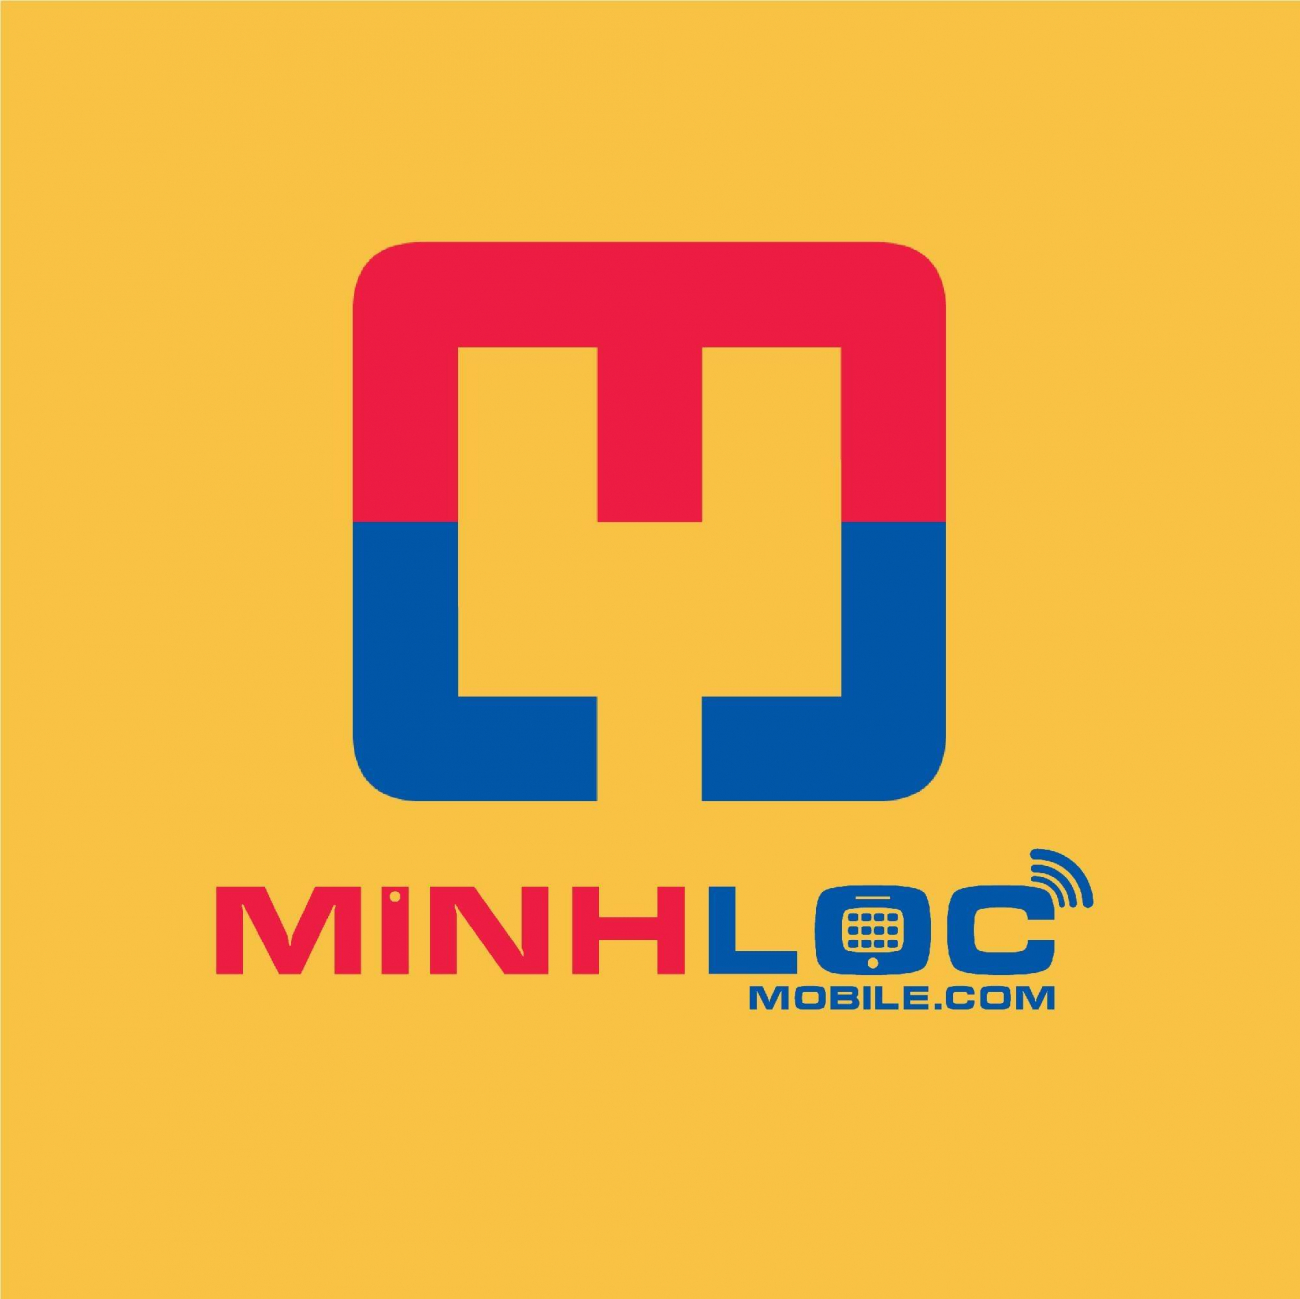 Cửa hàng điện thoại Minh Lộc Mobile